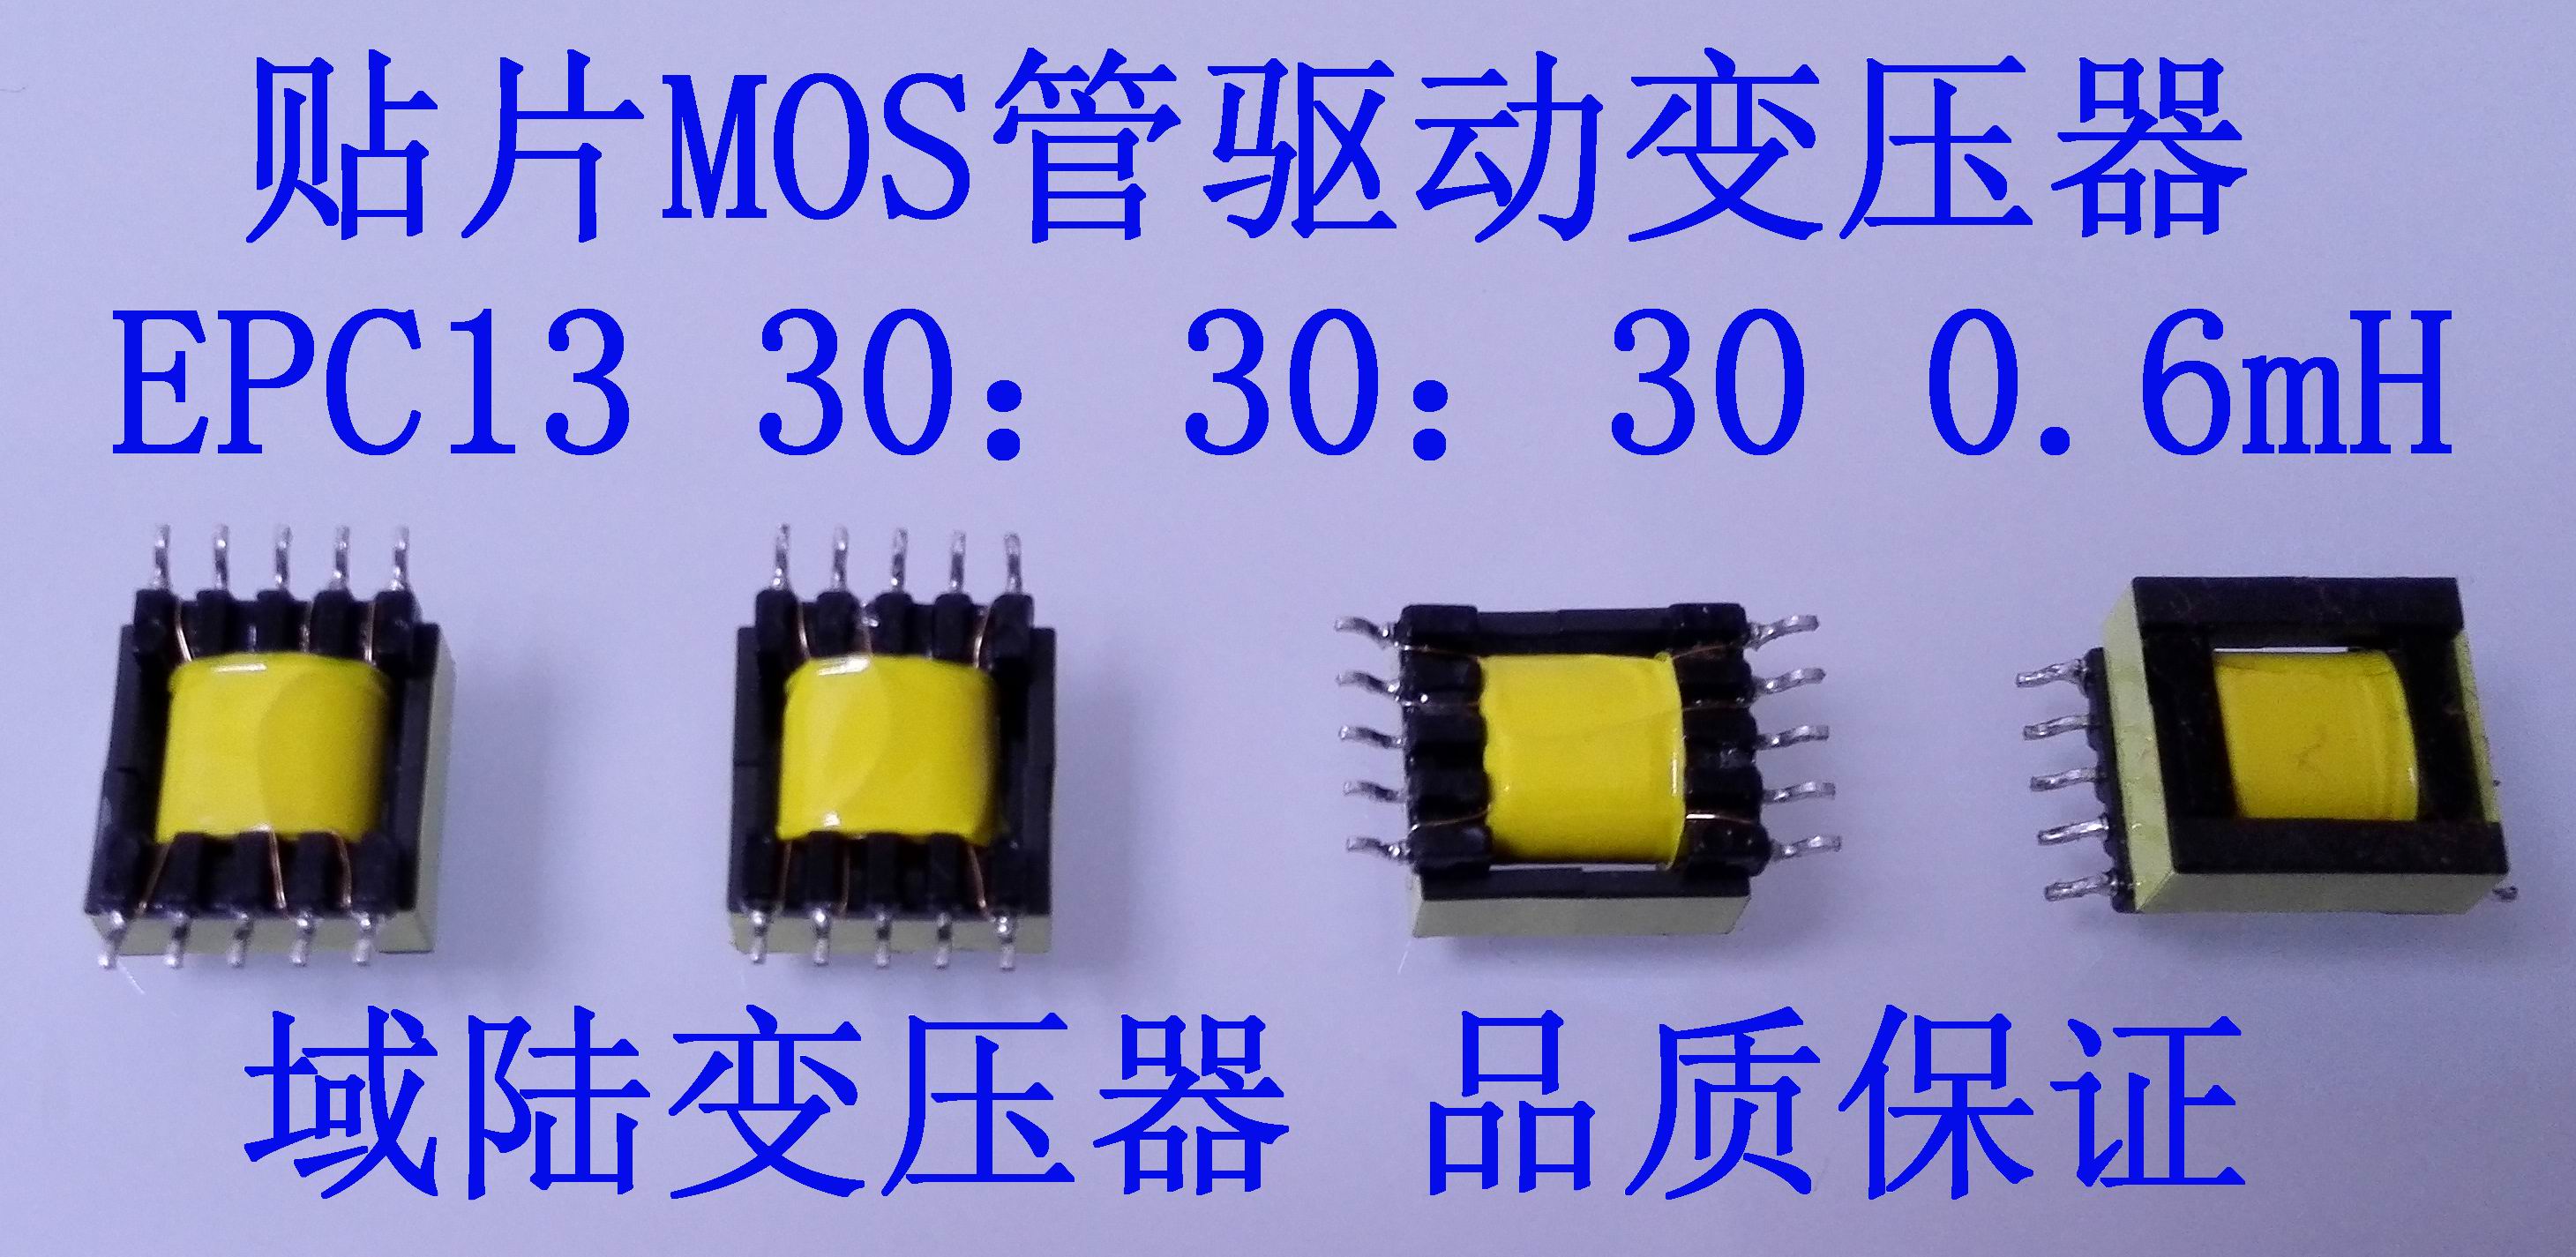 域陆贴片MOS管驱动变压器1:1:1脉冲IGBT隔离变压器EPC13电感0.6mH